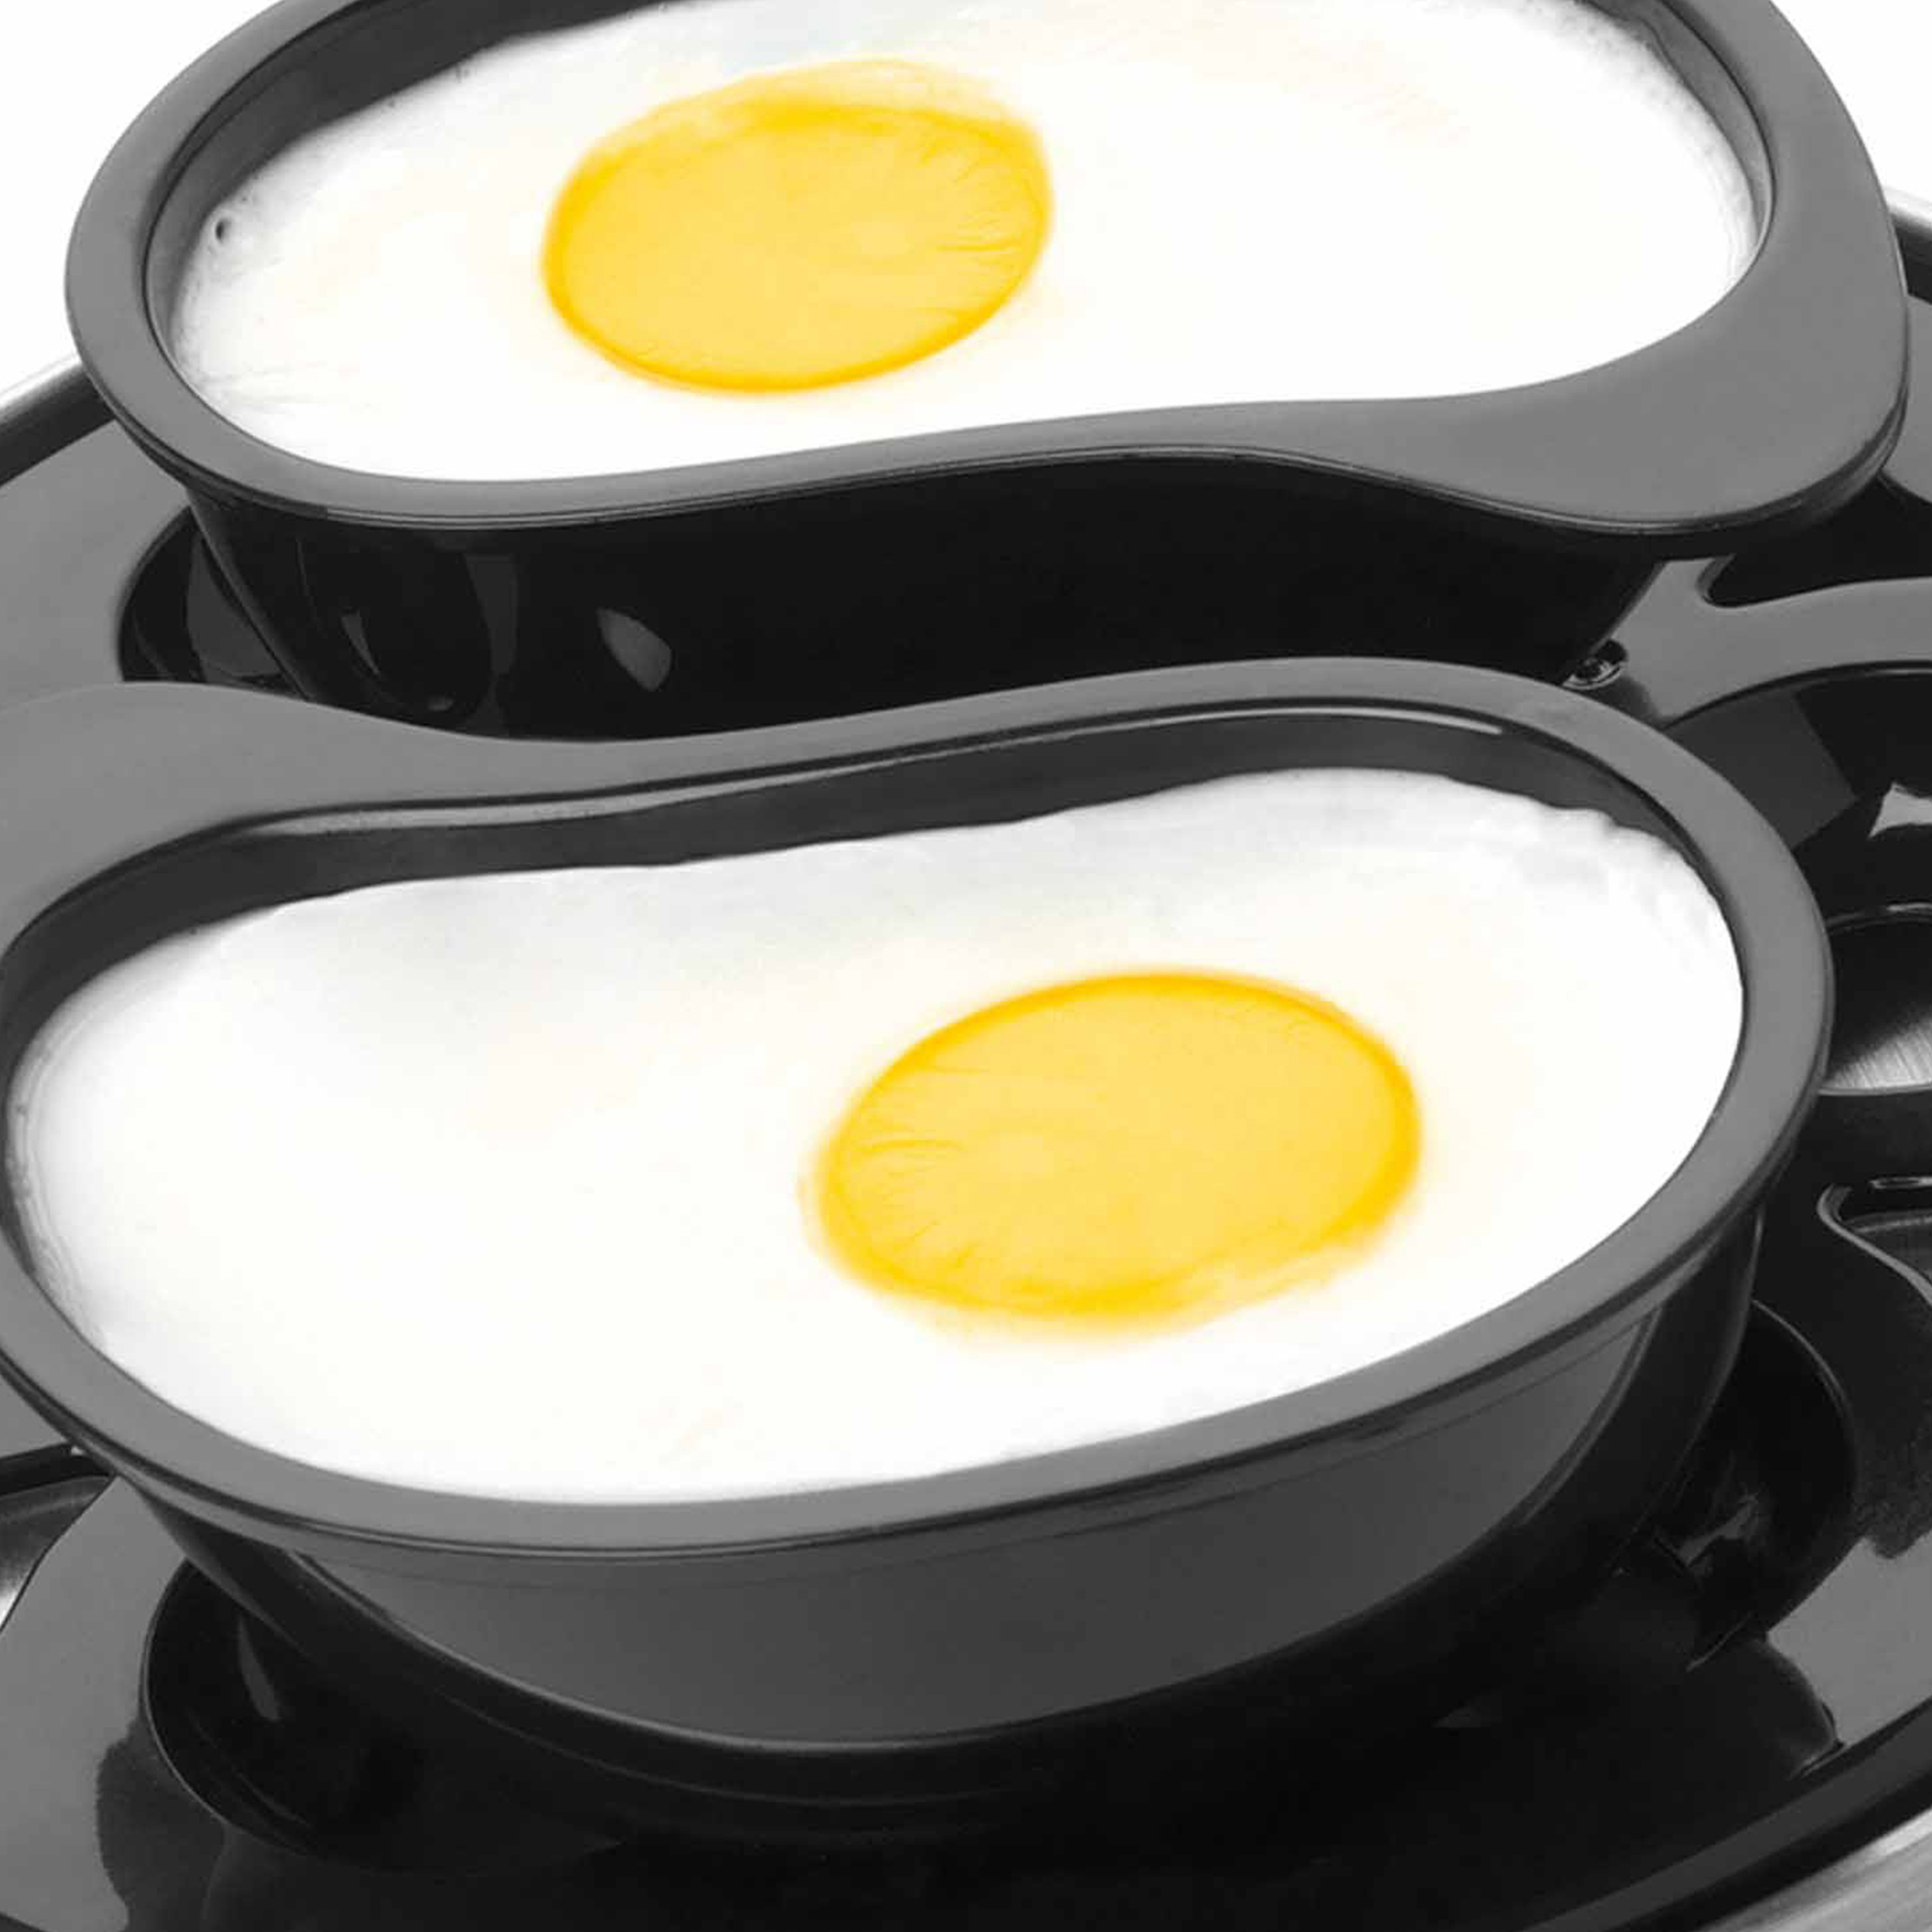 PETRA Elektrischer Eierkocher für 6 Eier Rührei, Pochieren, Eierkocher(Anzahl - - Eier: Spülmaschinenfest 6) Omelett Kochen